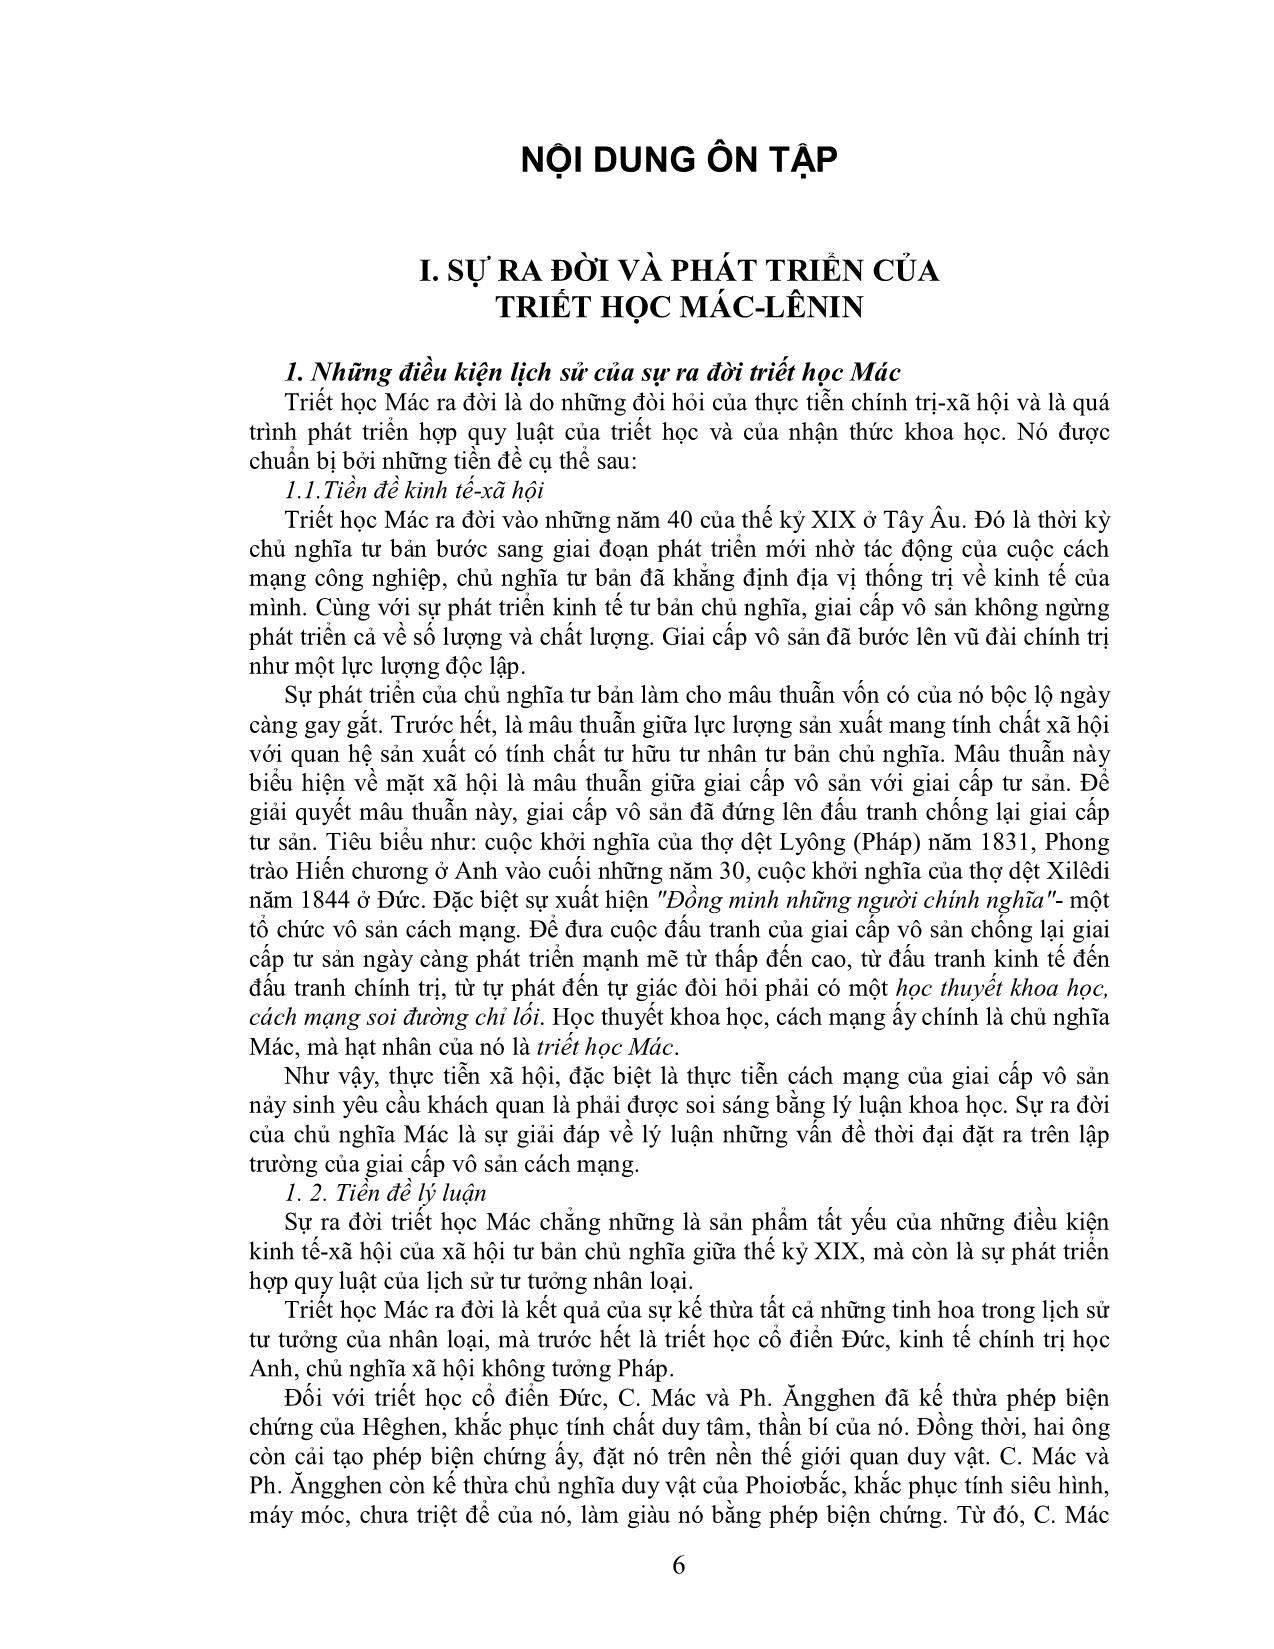 Đề cương chi tiết học phần Triết học Mác-Lênin trang 7